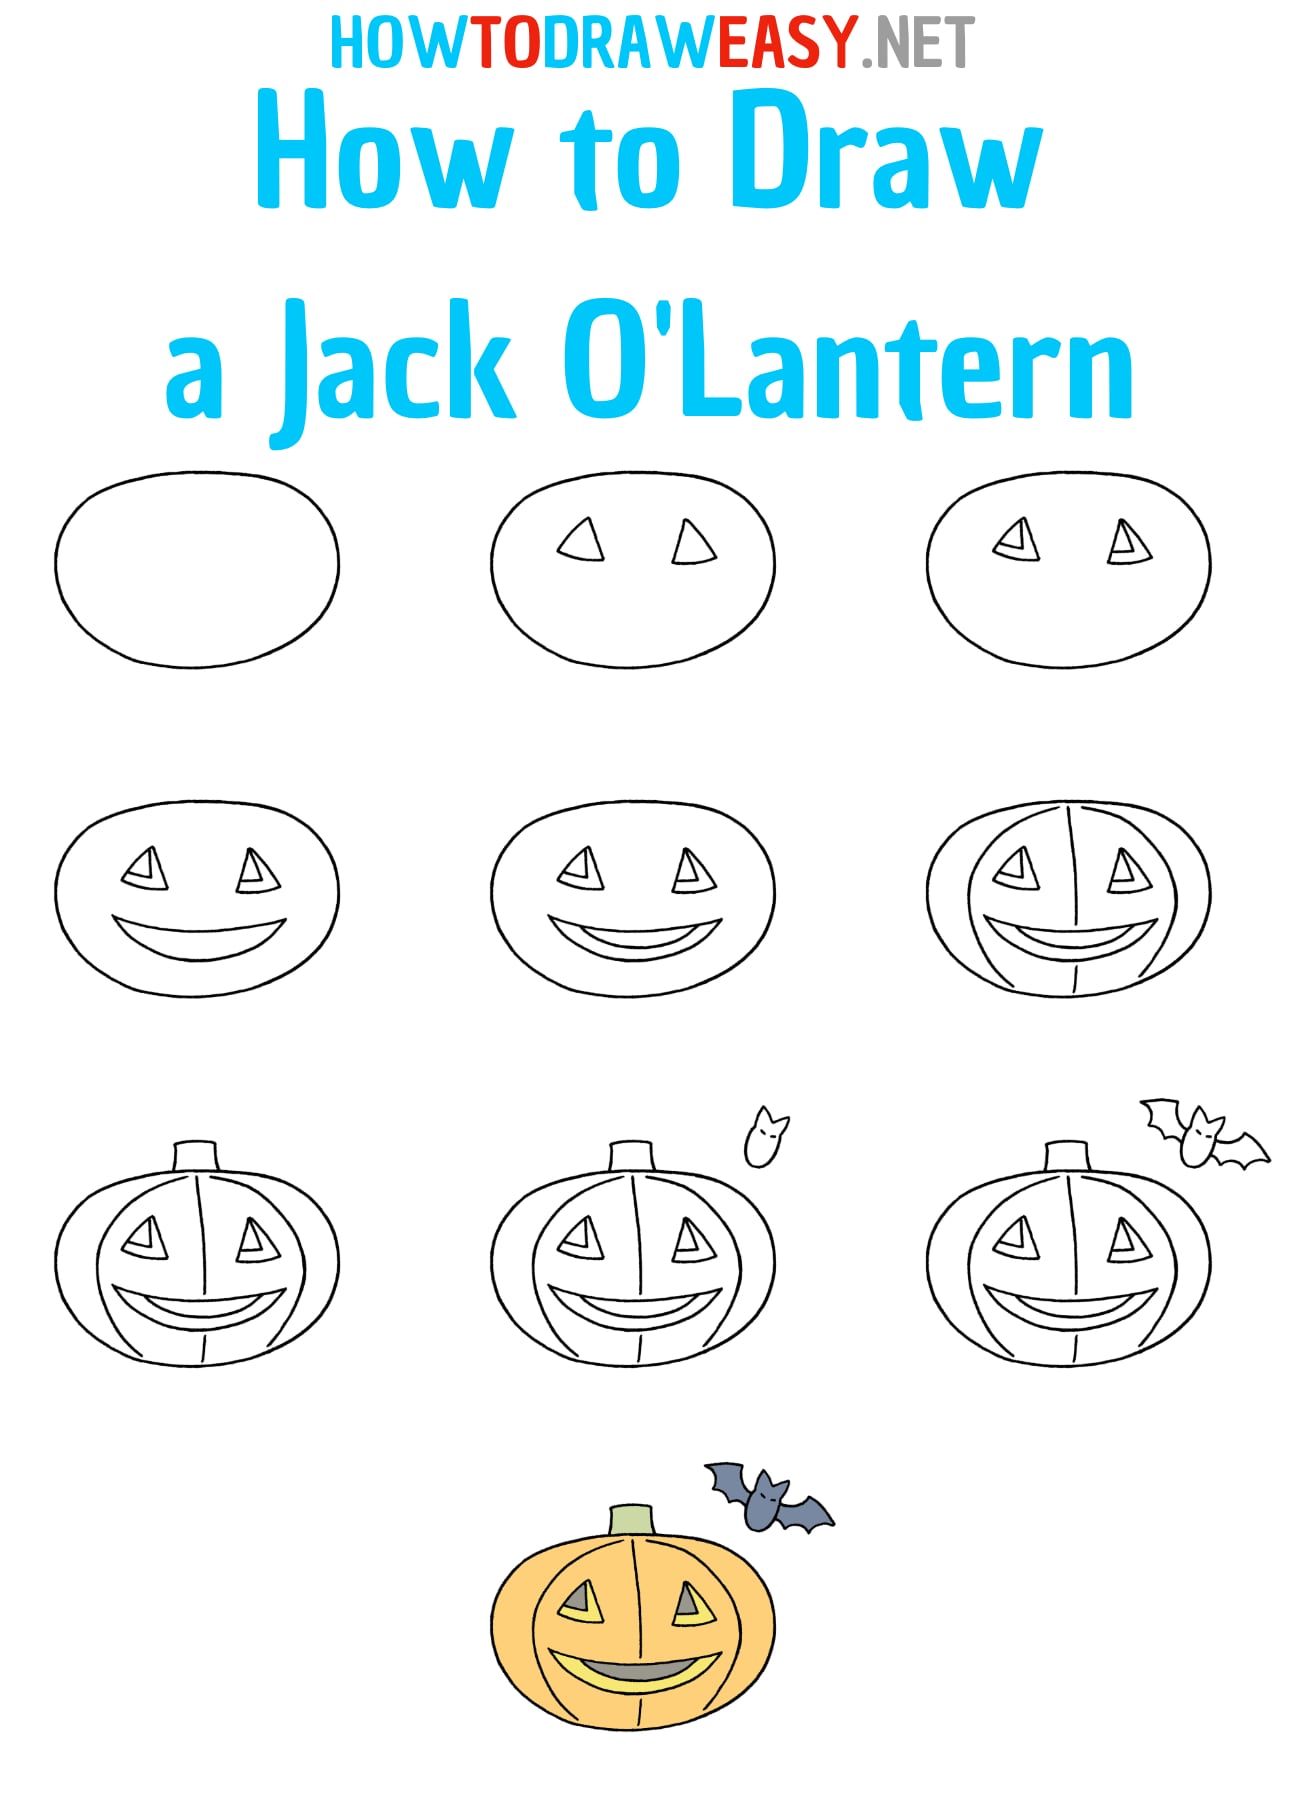 How to Draw a Jack o lantern step by step